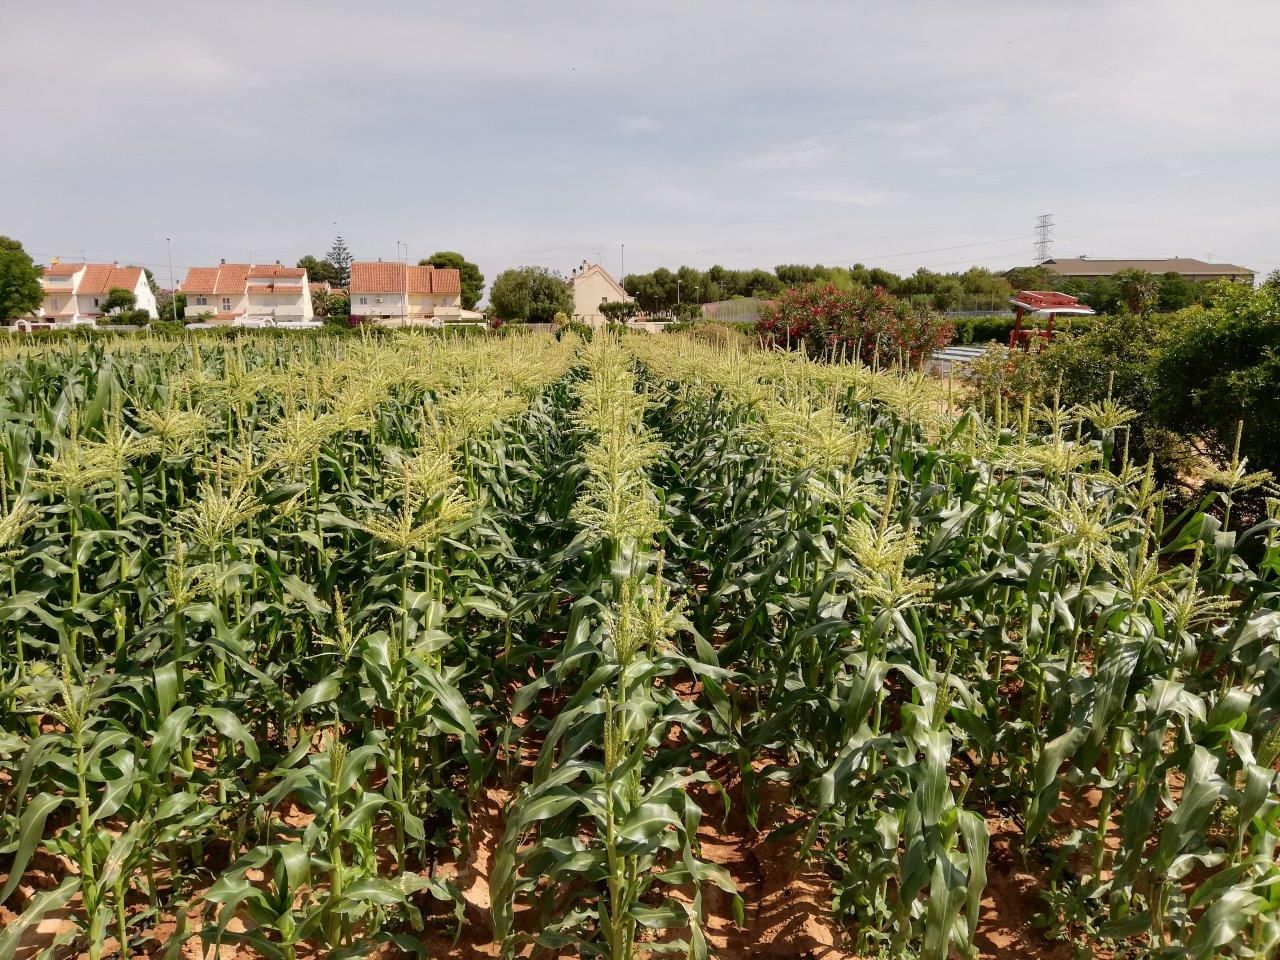 Cultivo de maíz, foto realizada desde arriba y se puede apreciar vivienda al fondo